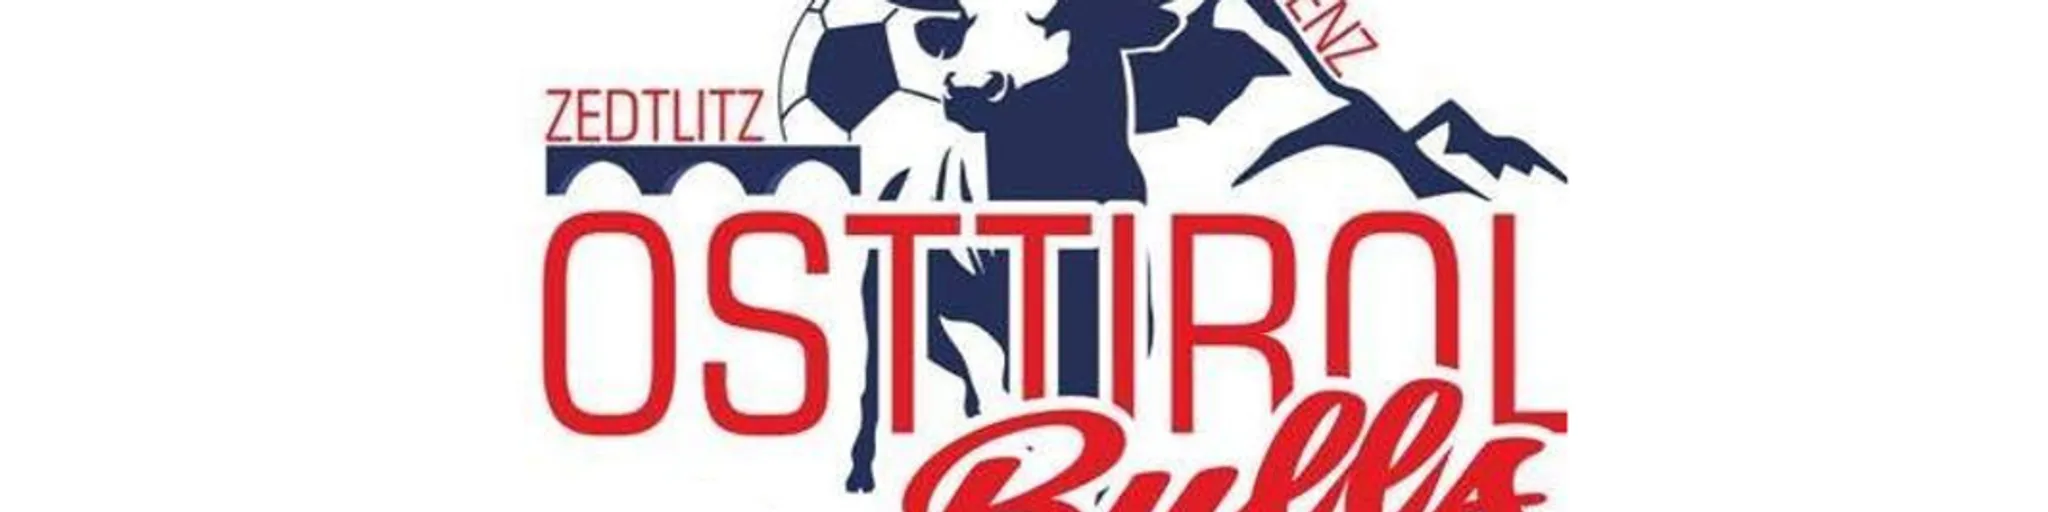 Osttirol Bulls, OFC seit 24. Juli 2017